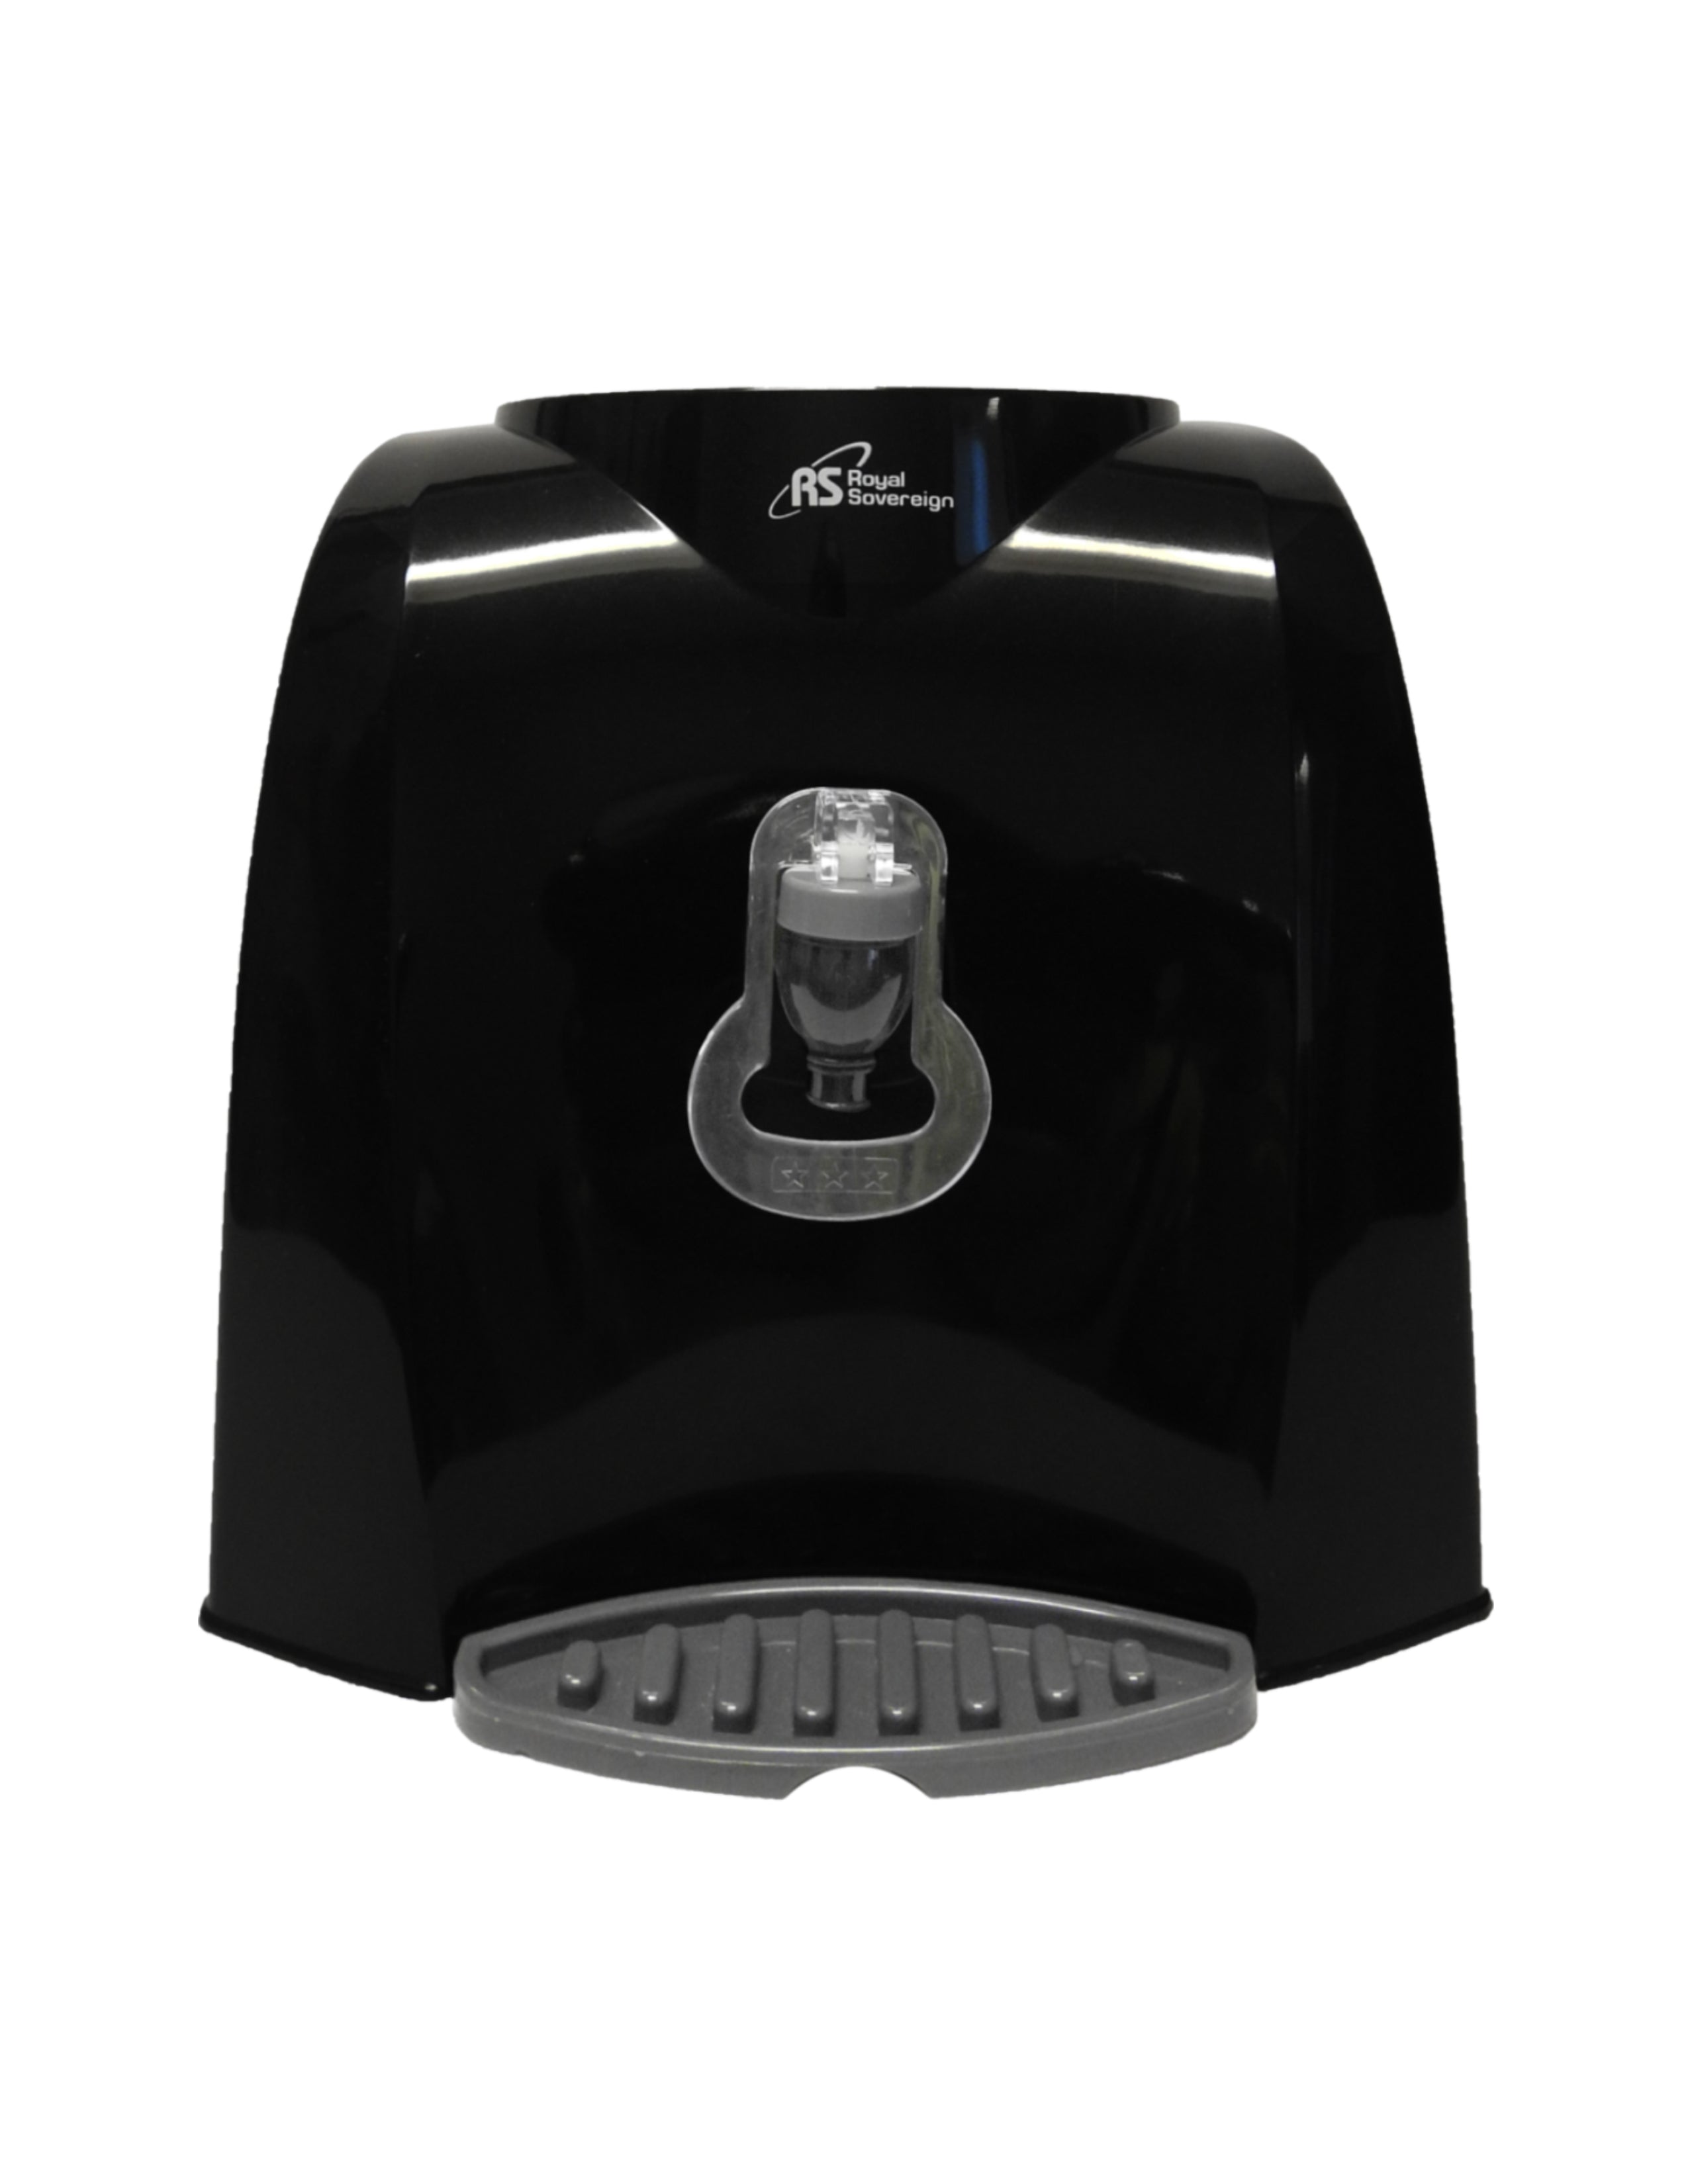 RWD-50B/ Countertop Water Dispenser